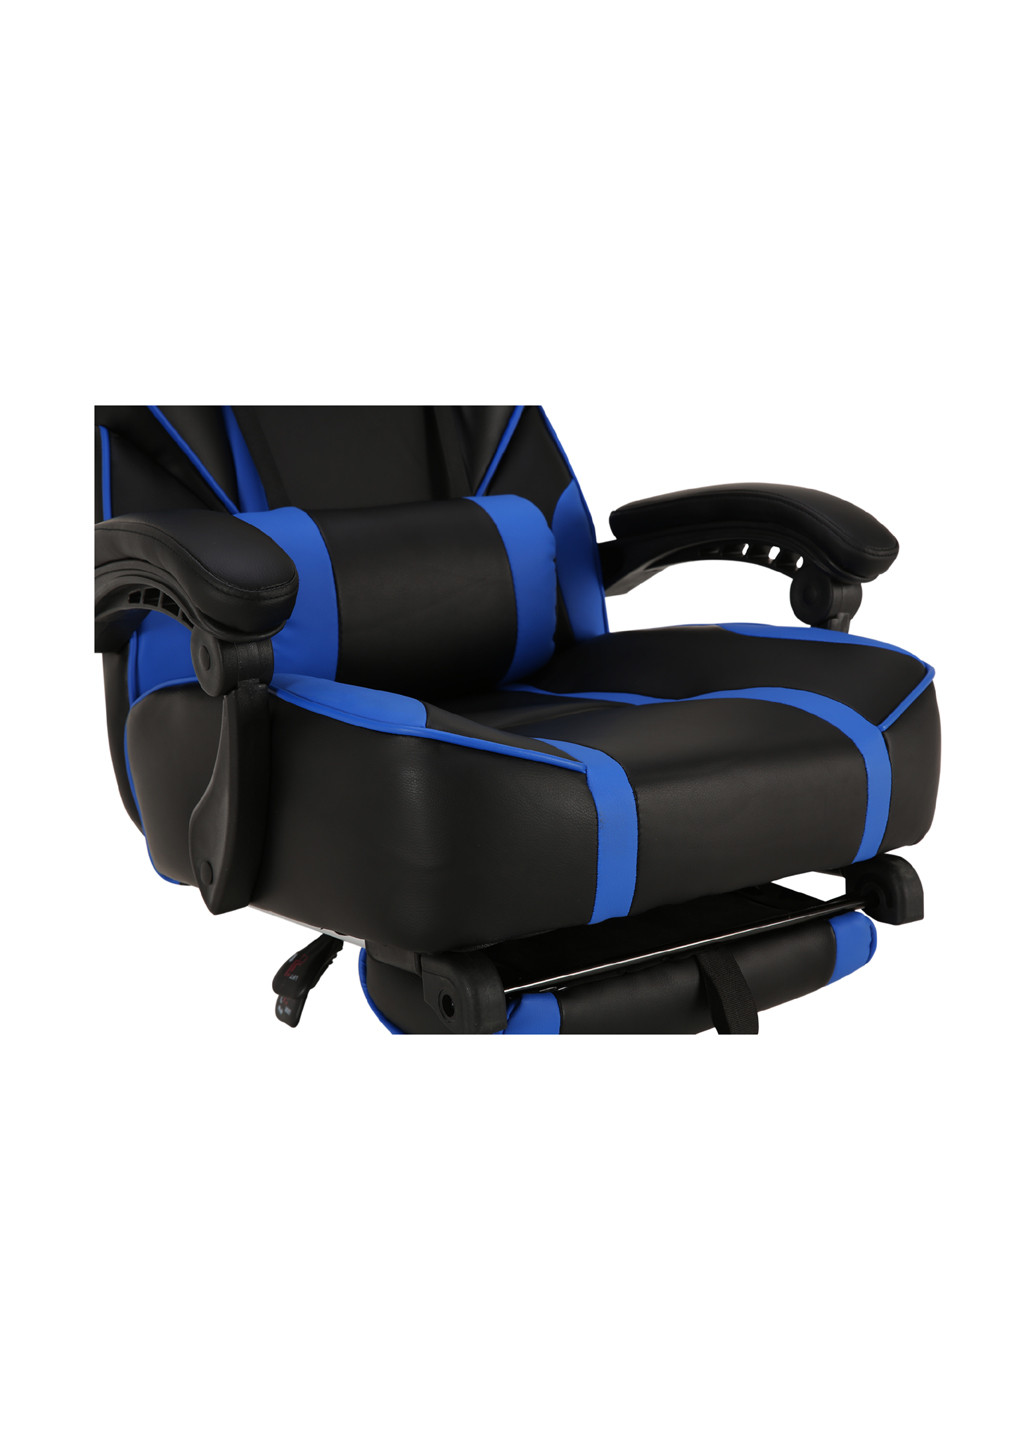 Геймерське крісло X-2748 Black / Blue GT Racer x-2748 black/blue (177294954)